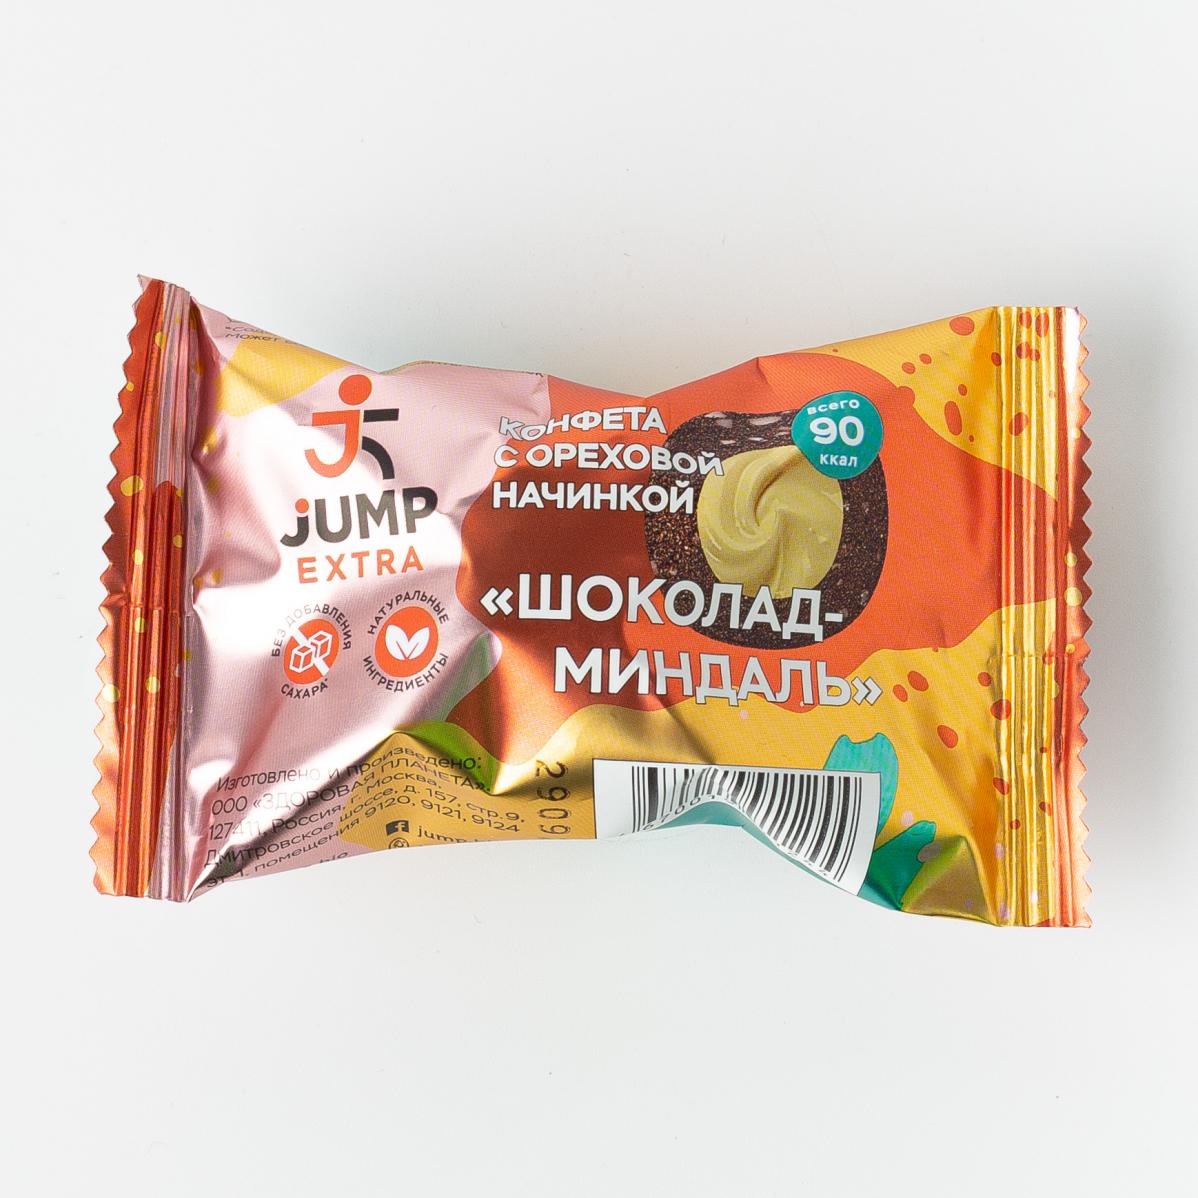 Конфета с ореховой начинкой Шоколад-миндаль, Jump Extra - 30 г